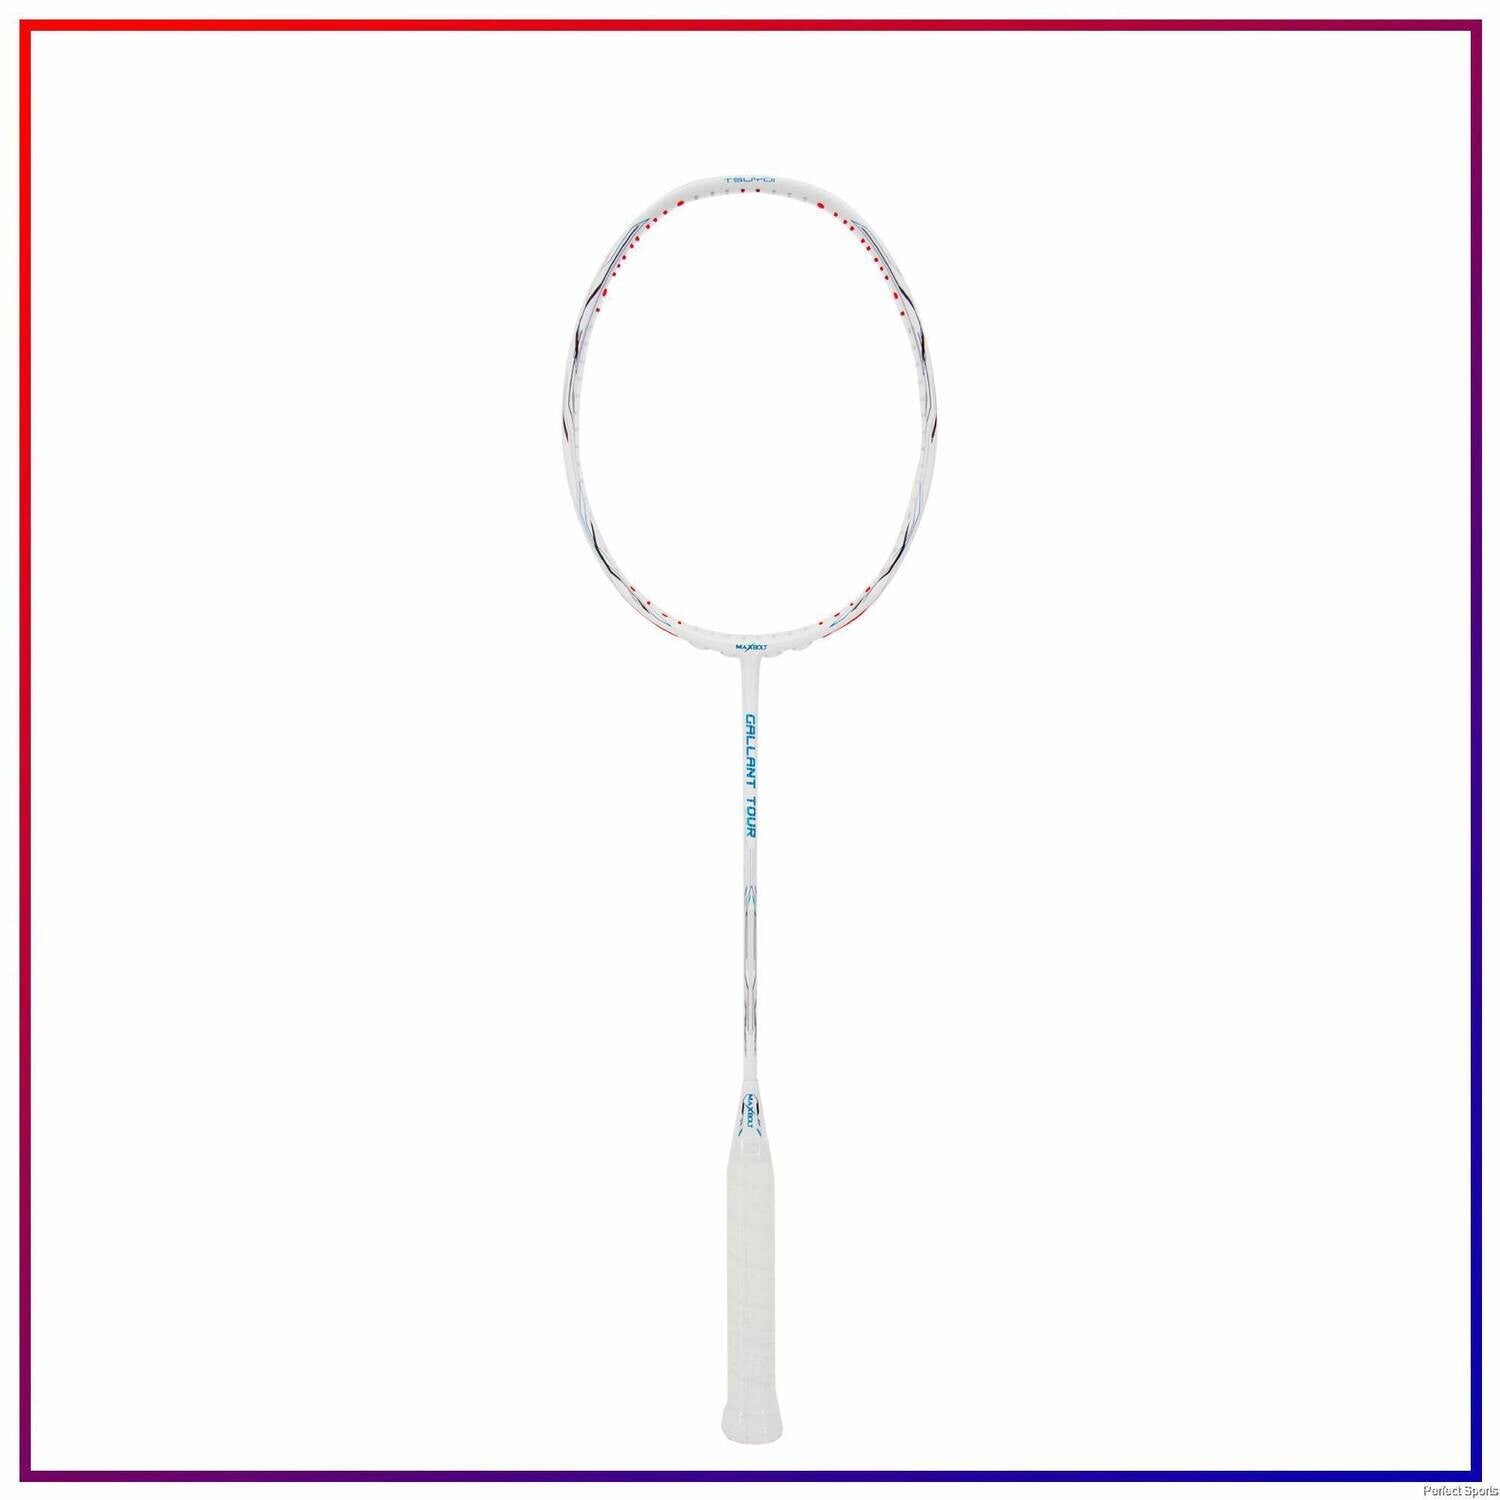 Maxbolt Gallant Tour Badminton Racket - White